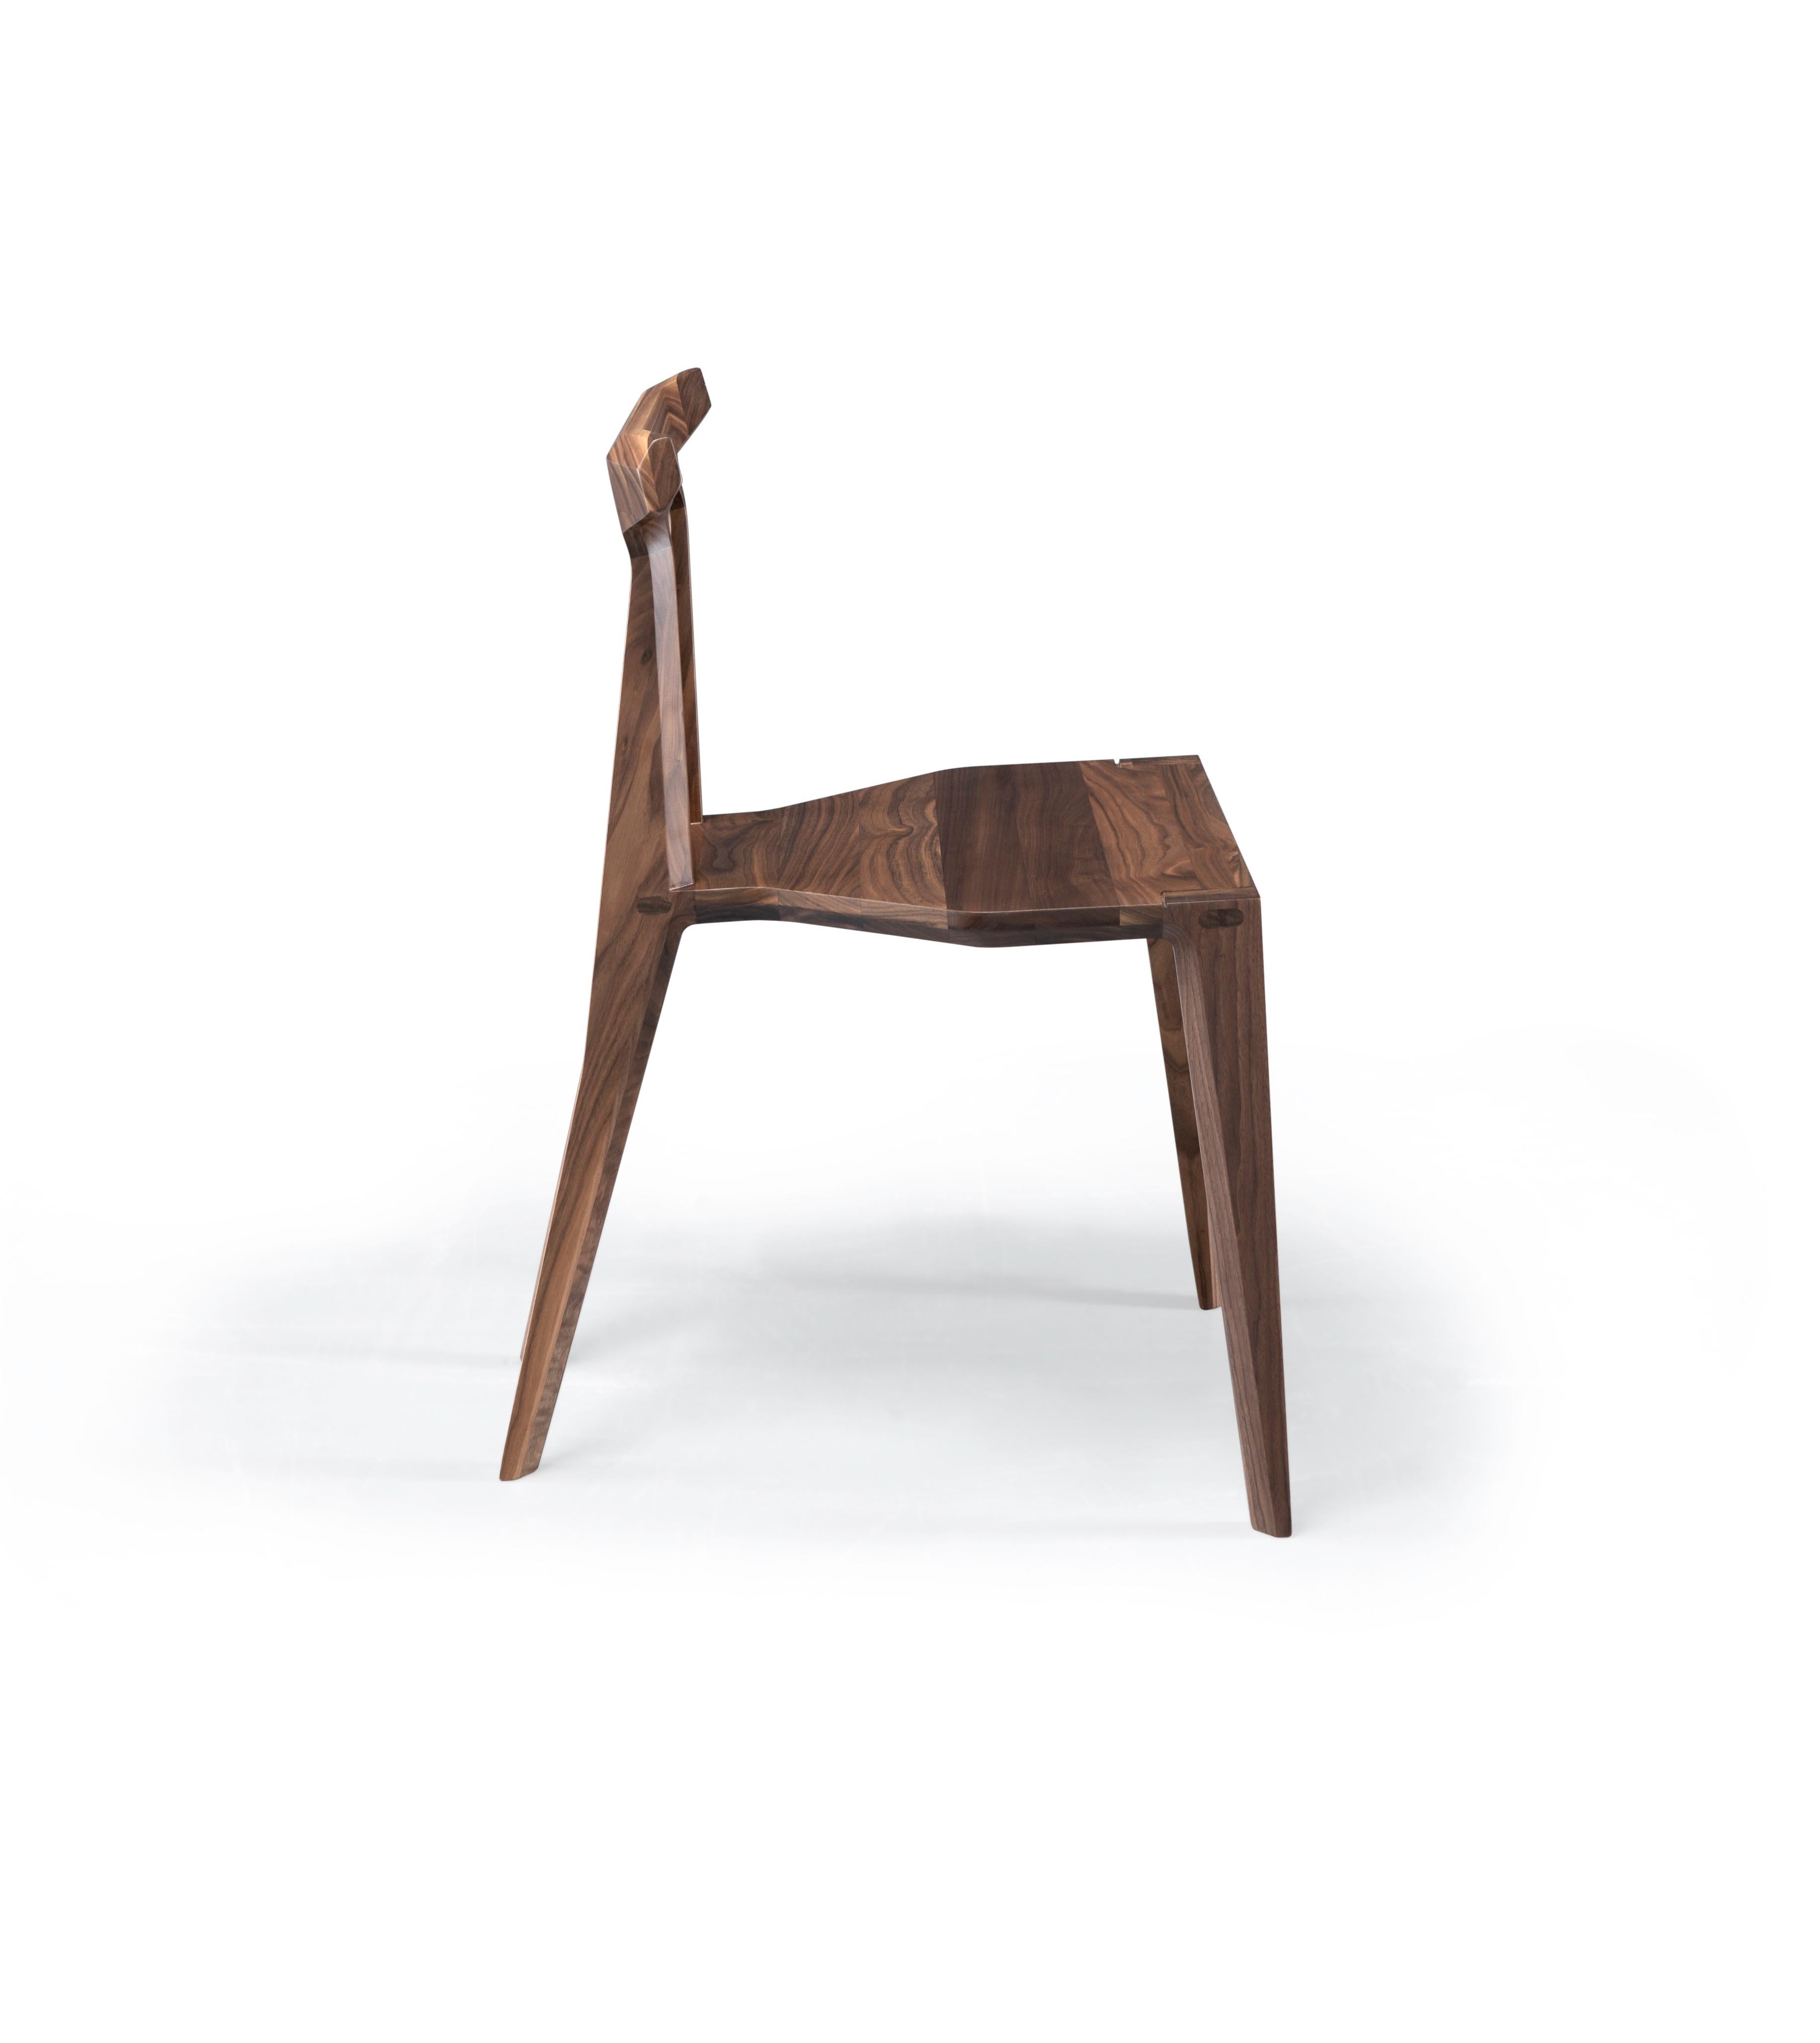 Ein atemberaubend schöner Stuhl im nordischen Stil, ganz aus Holz, stark und leicht, der jeden Raum aufwertet.
Erhältlich in Eiche oder Nussbaum und mit gepolstertem Sitzkissen.
Zusammengebaut ohne Schrauben und Beschläge.
Verpackt in einer